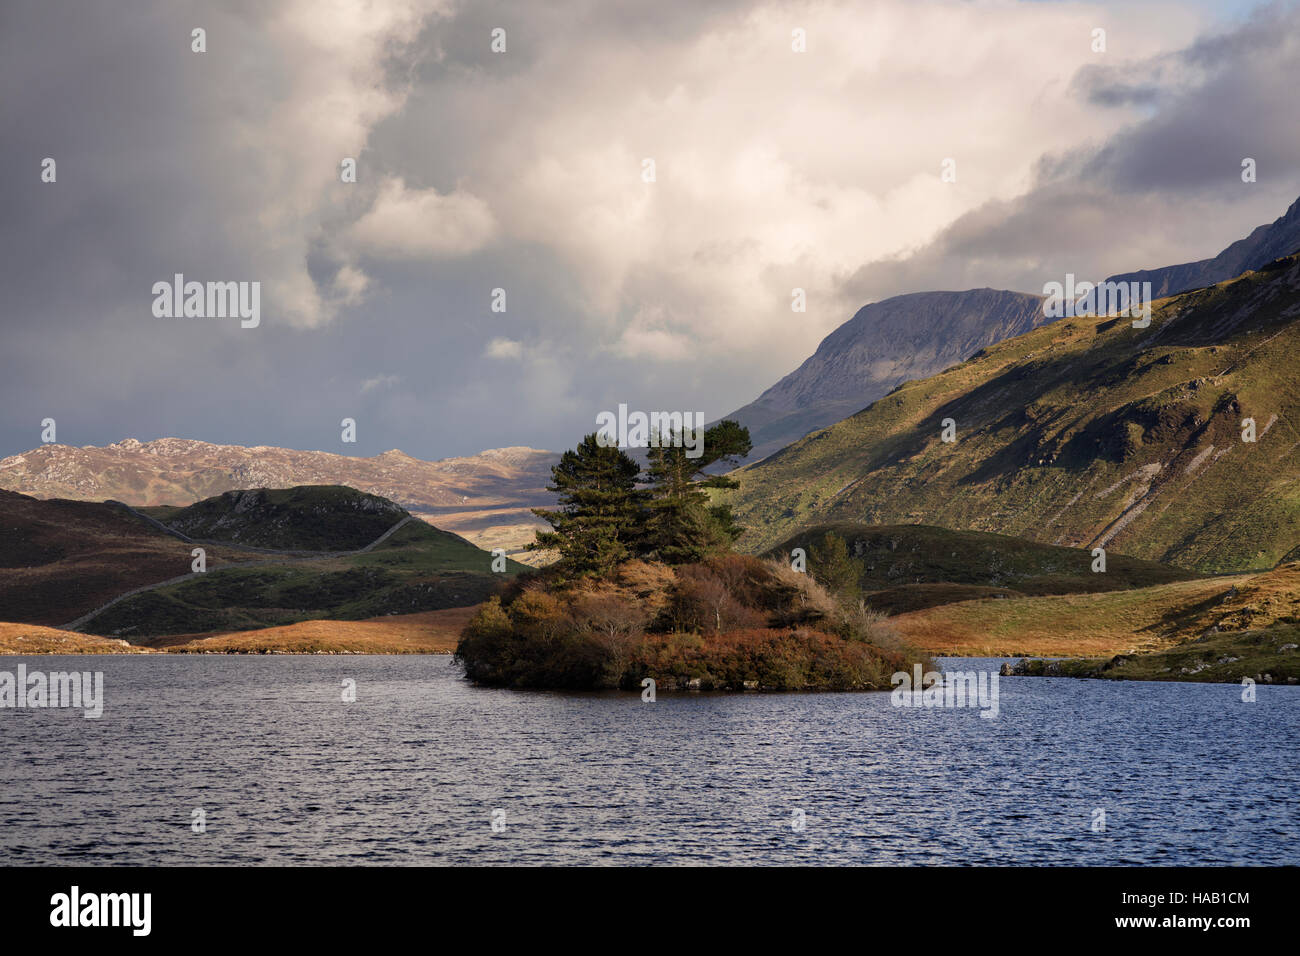 Drammatico autunno luce a Cregennan laghi in Snowdonia Foto Stock